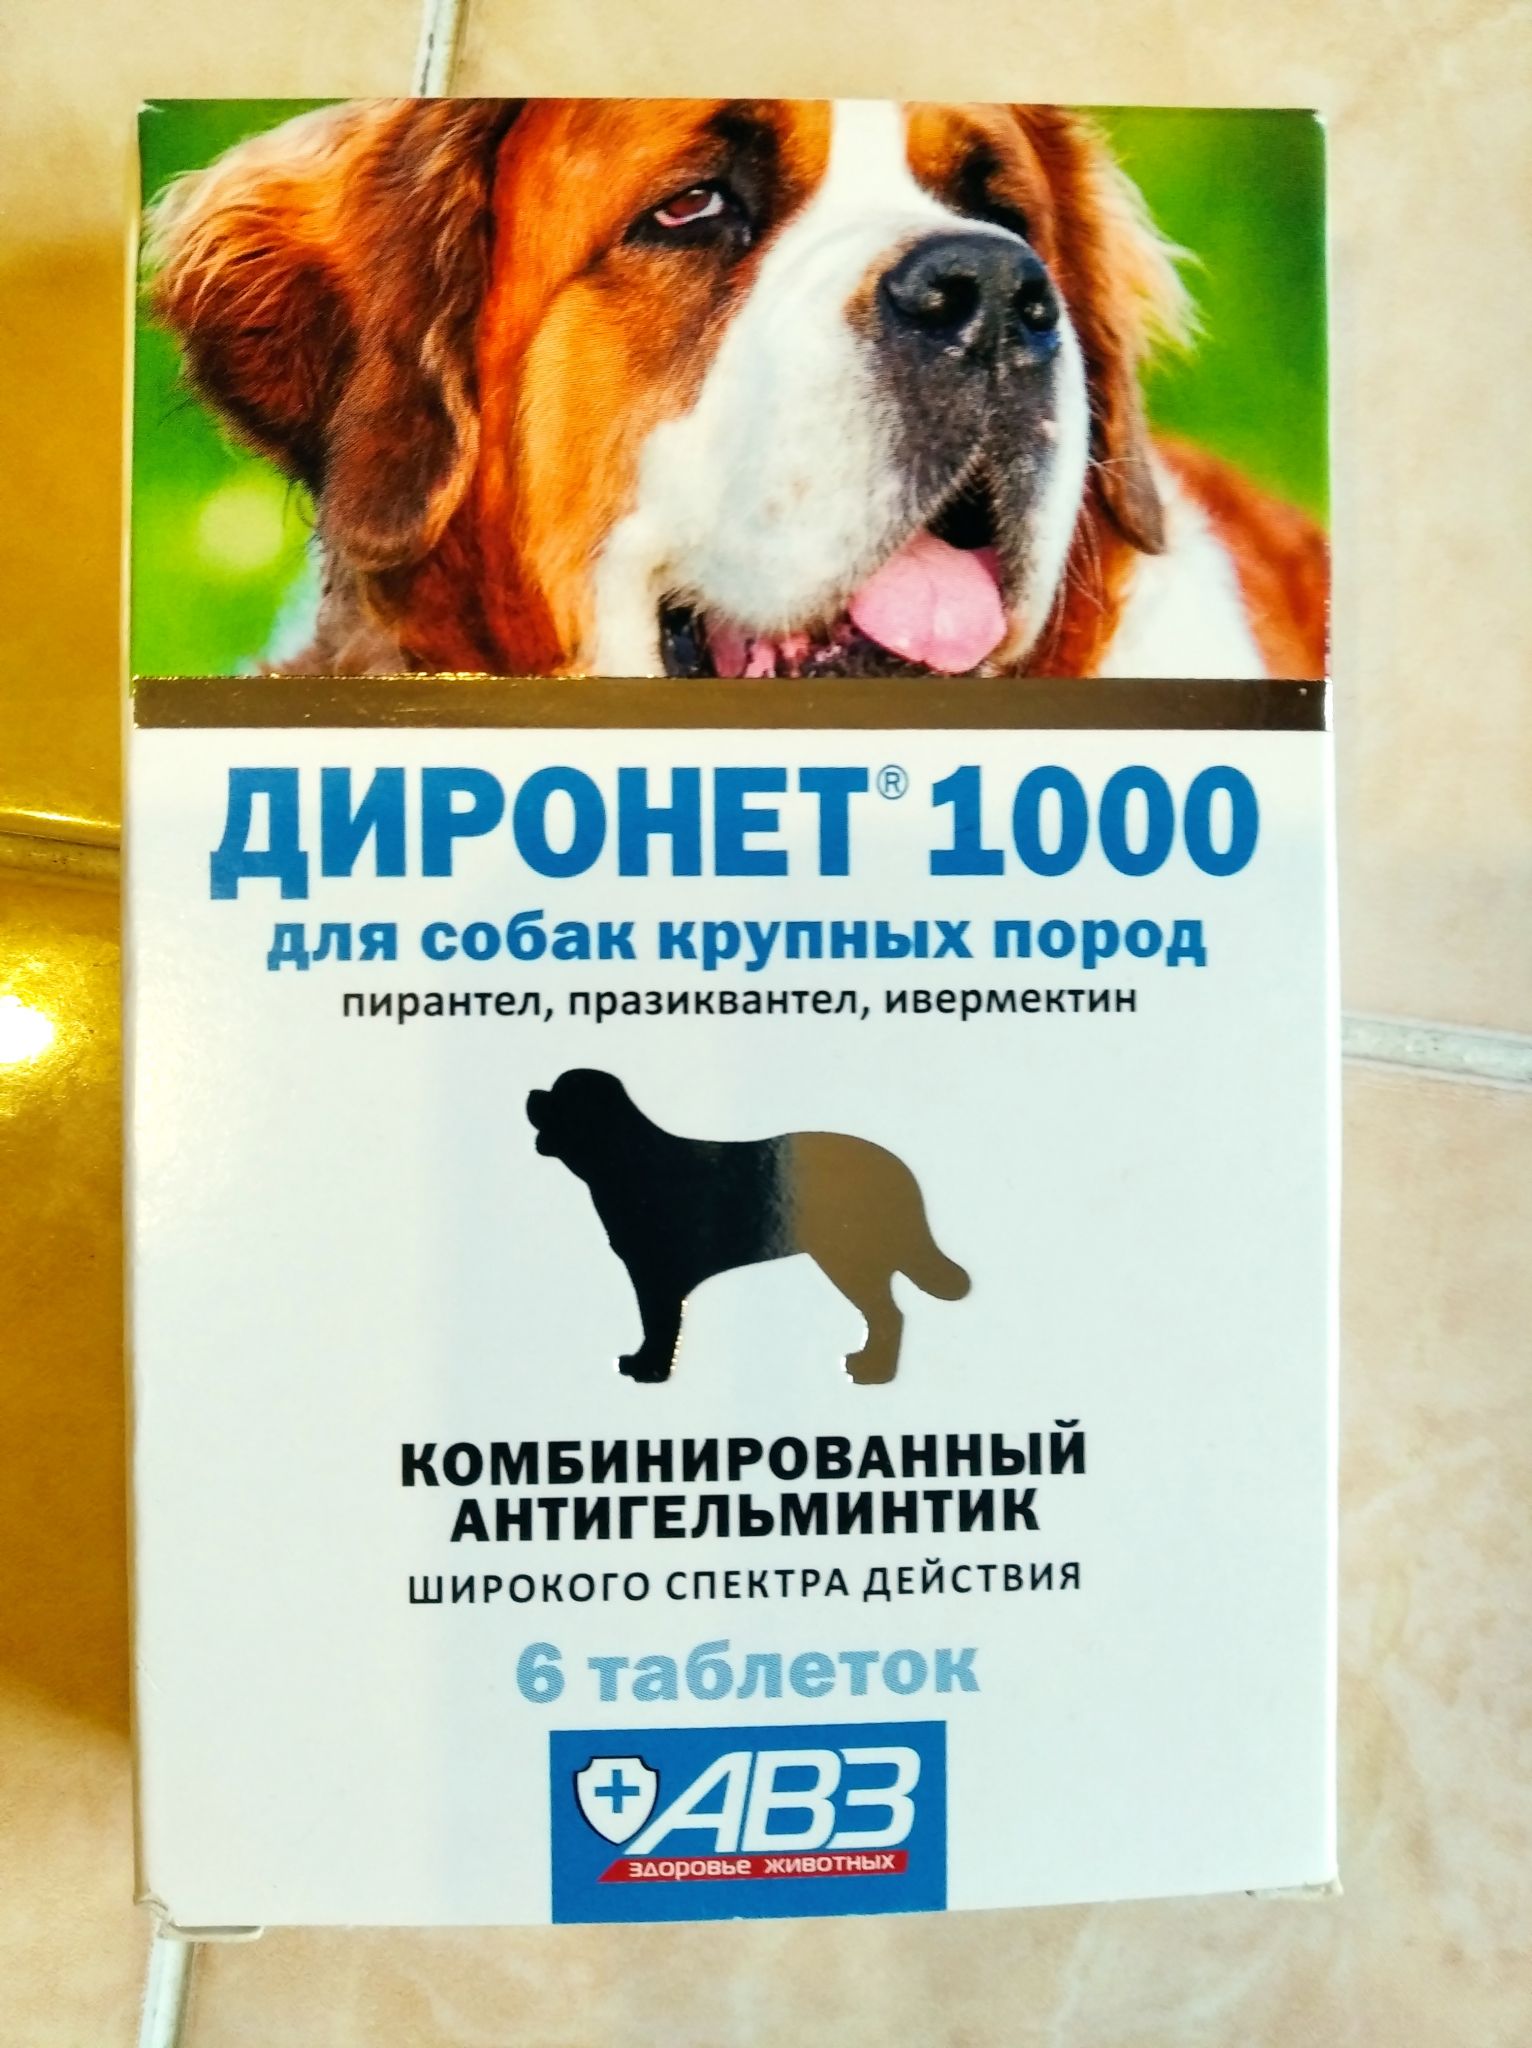 Диронет 200 для собак. Диронет 1000 для собак крупных пород (антигельминтик)АВЗ. АВЗ диронет 1000 таблетки антигельминтик для собак крупных пород 1574,. Диронет 500 для собак средних пород. АВЗ диронет 200 таблетки для собак средних пород.